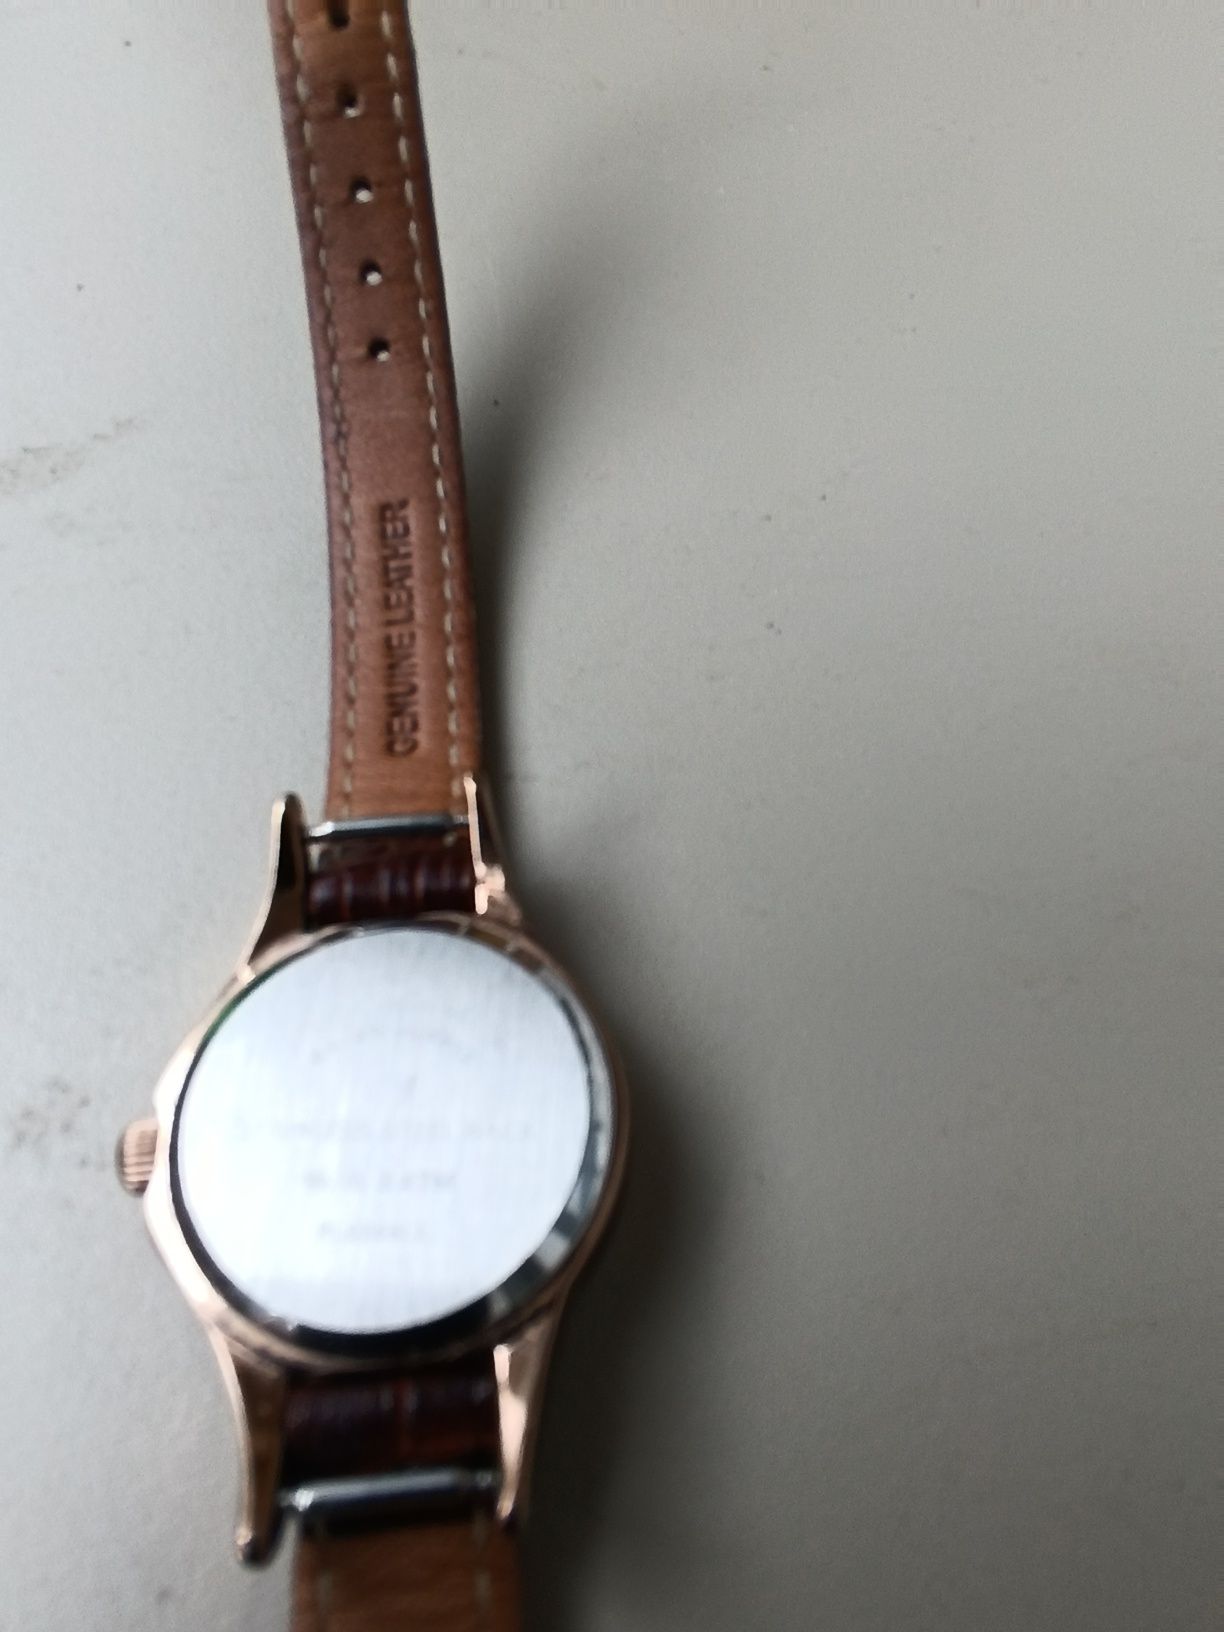 Часы ROMANSON ( Швейцария)  Хороший подарок.